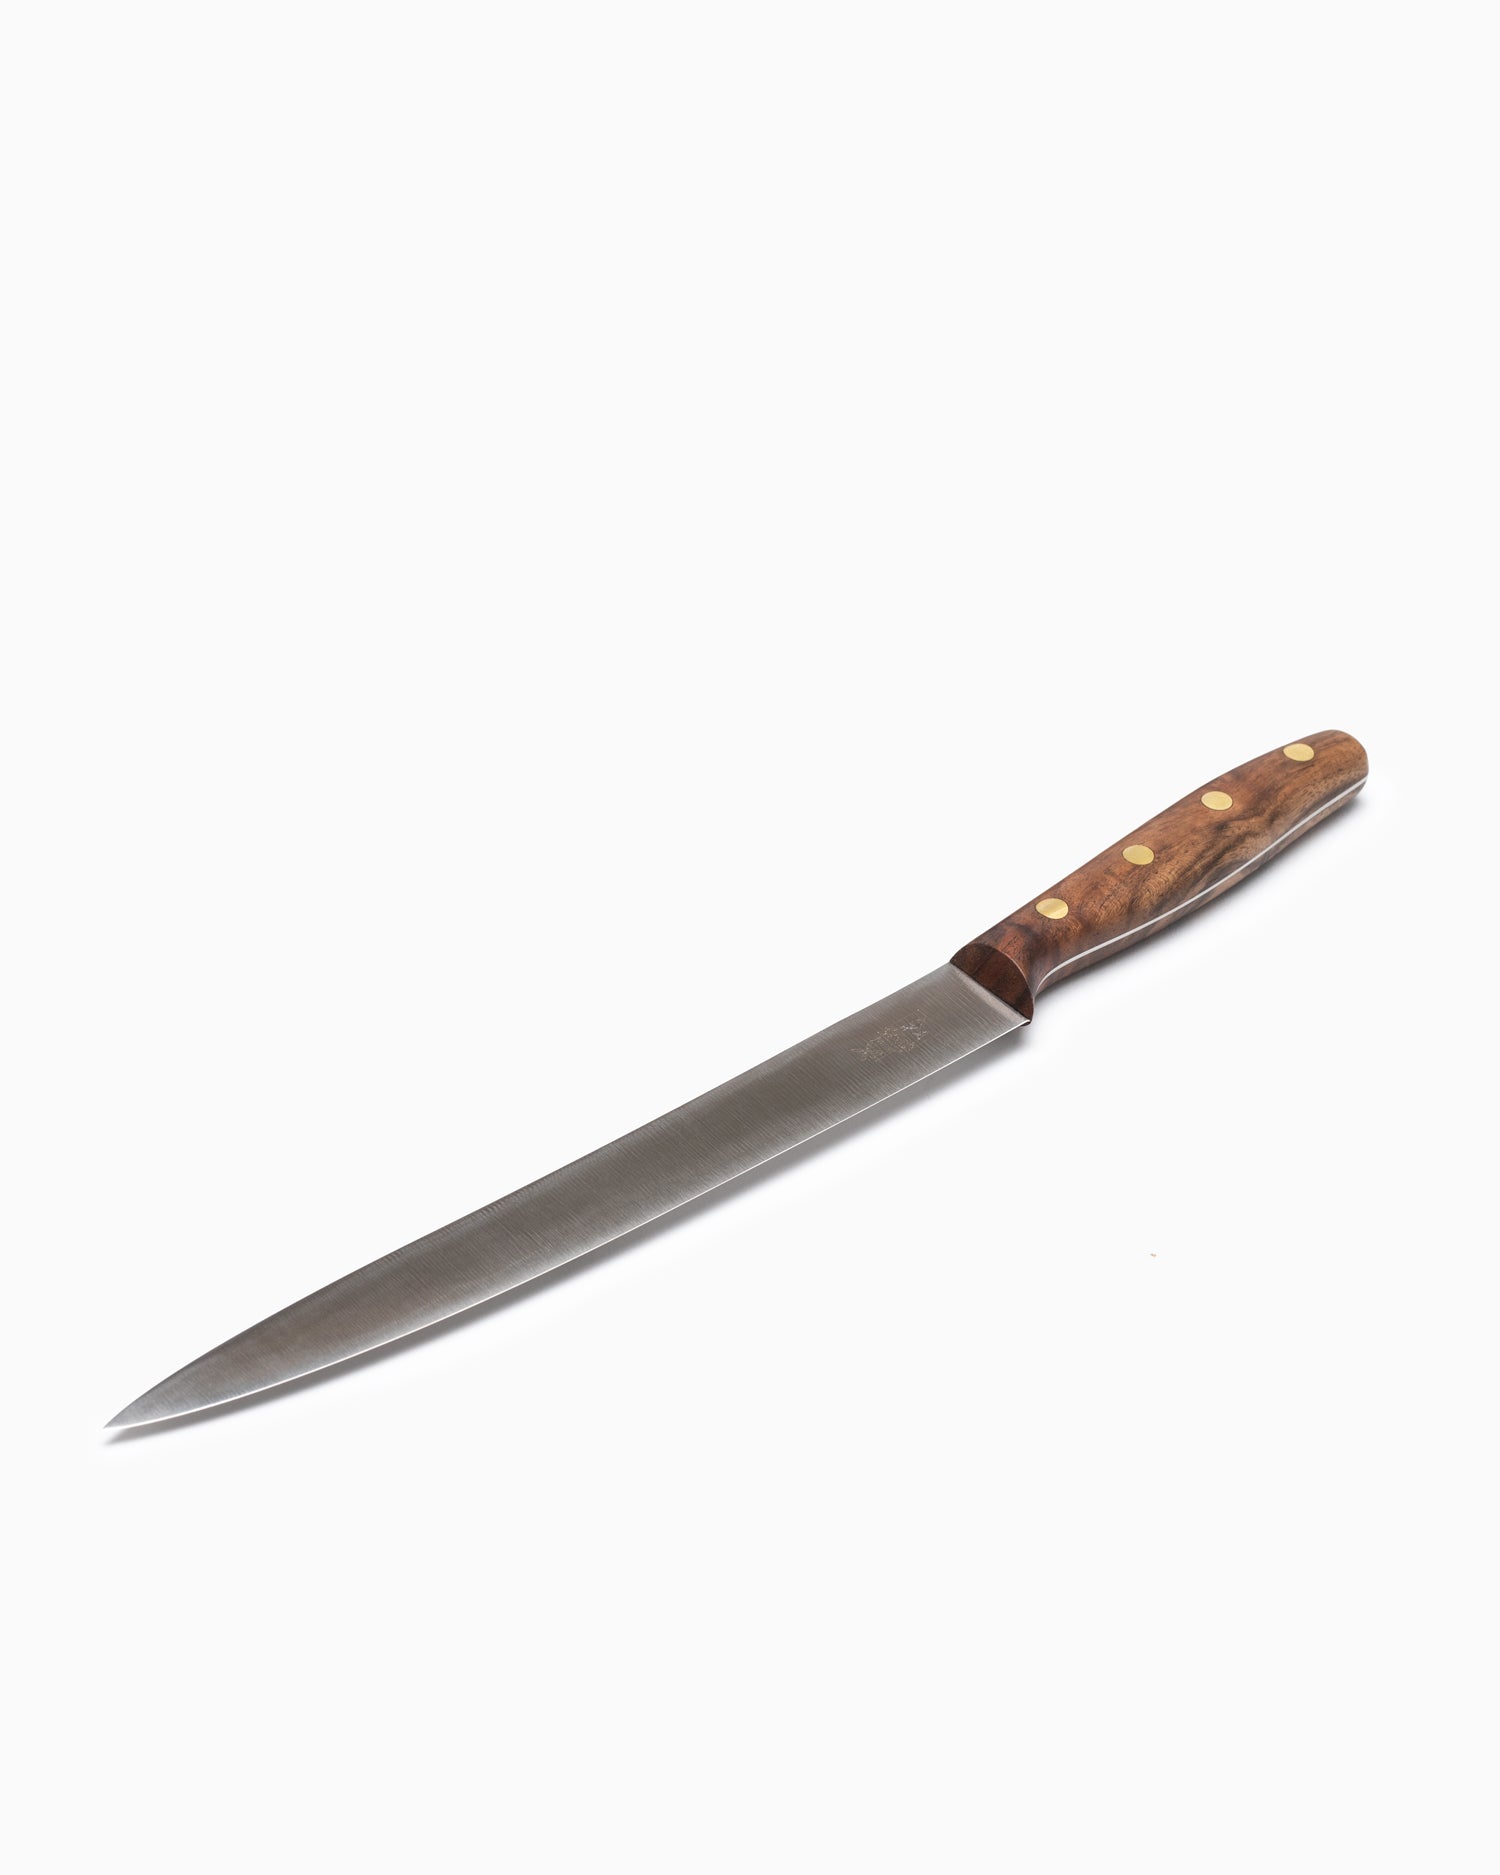 Robert Herder K6 Filleting Knife - Stainless